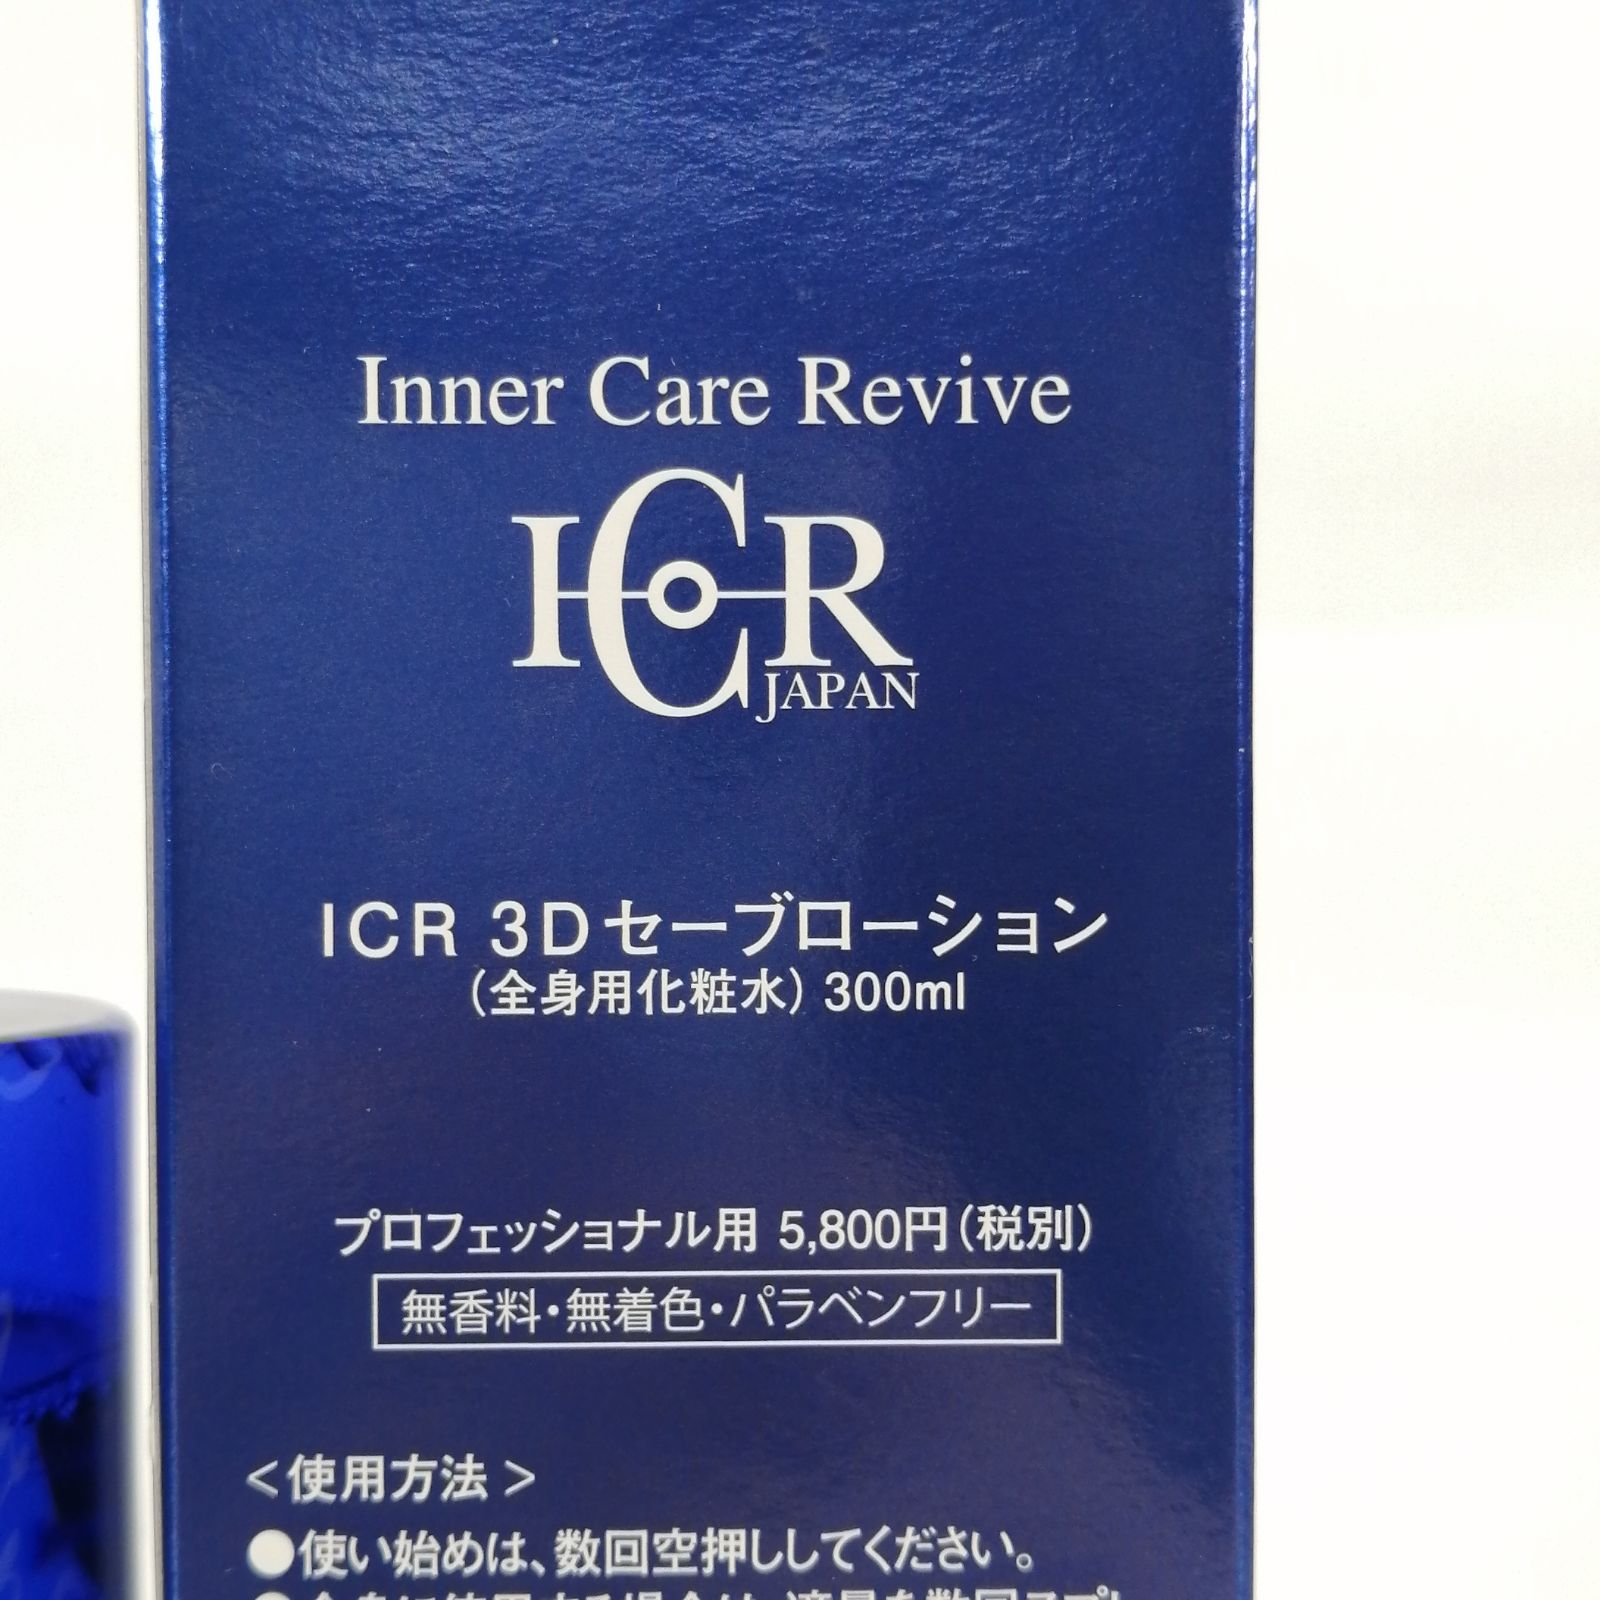 未使用 ICR 3D セーブローション 全身用 化粧水 300ml 